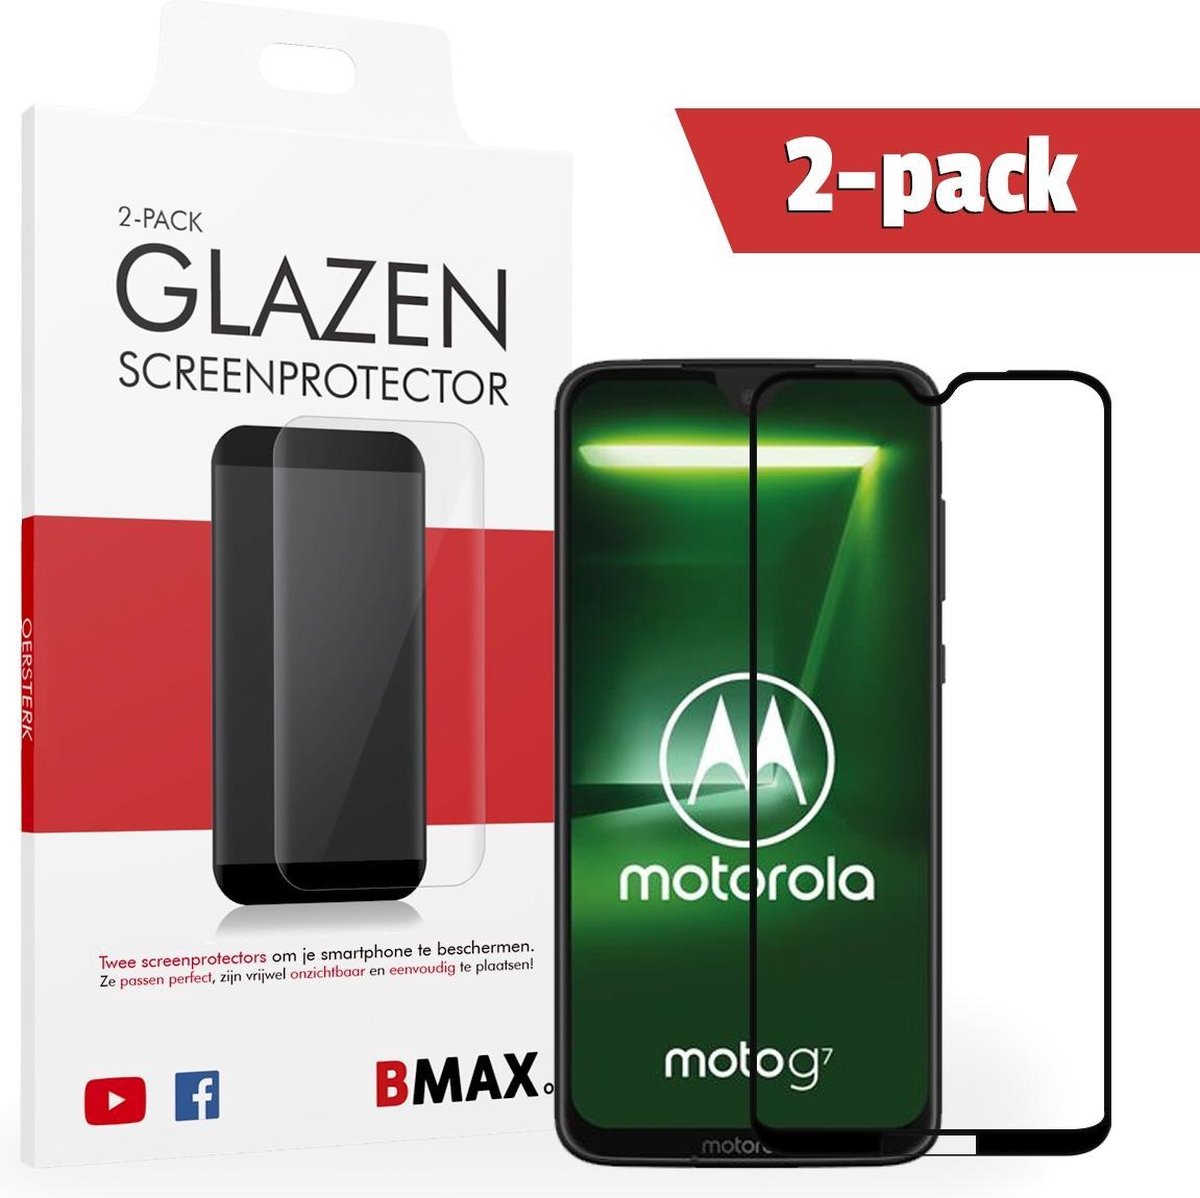 2-pack Bmax Motorola Moto G7 Screenprotector - Glass - Full Cover 2.5d - Black